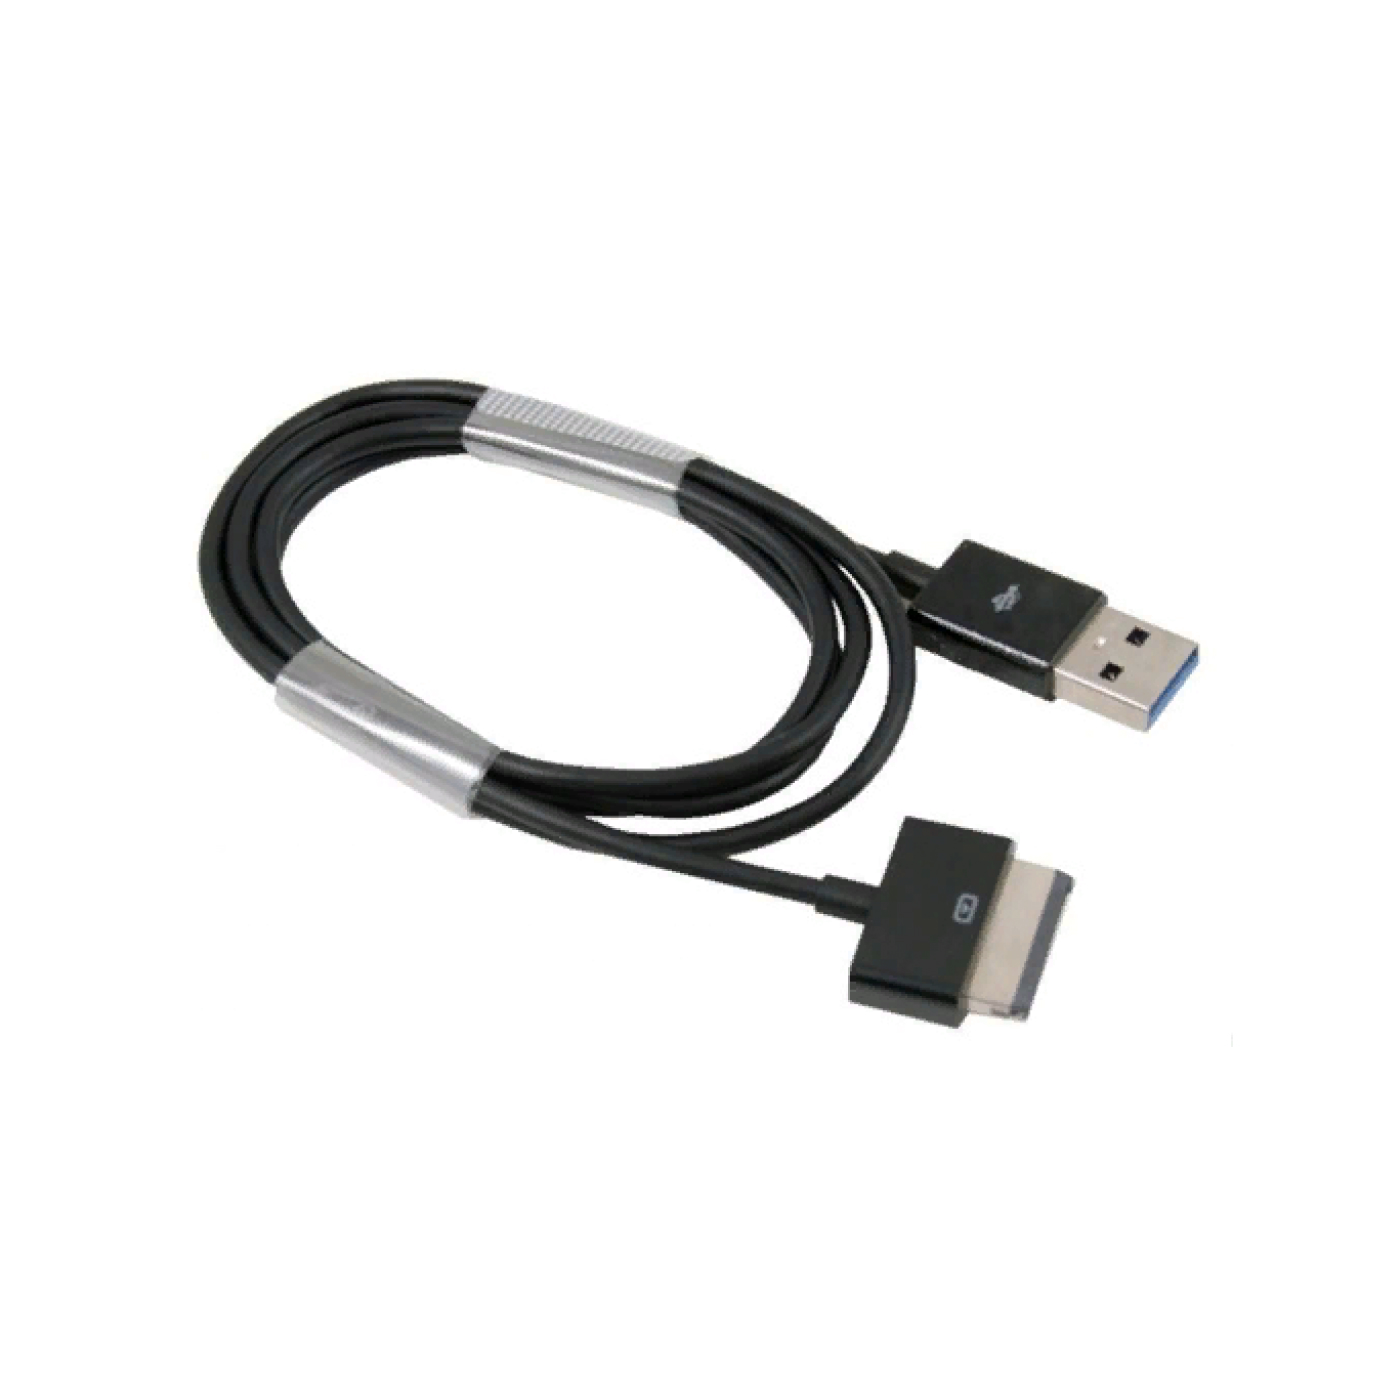 Купить кабель для планшетов. Samsung p1000 кабель. N8000 Samsung кабель зарядки. USB кабель для ASUS WIFI. Переходник на планшет асус.